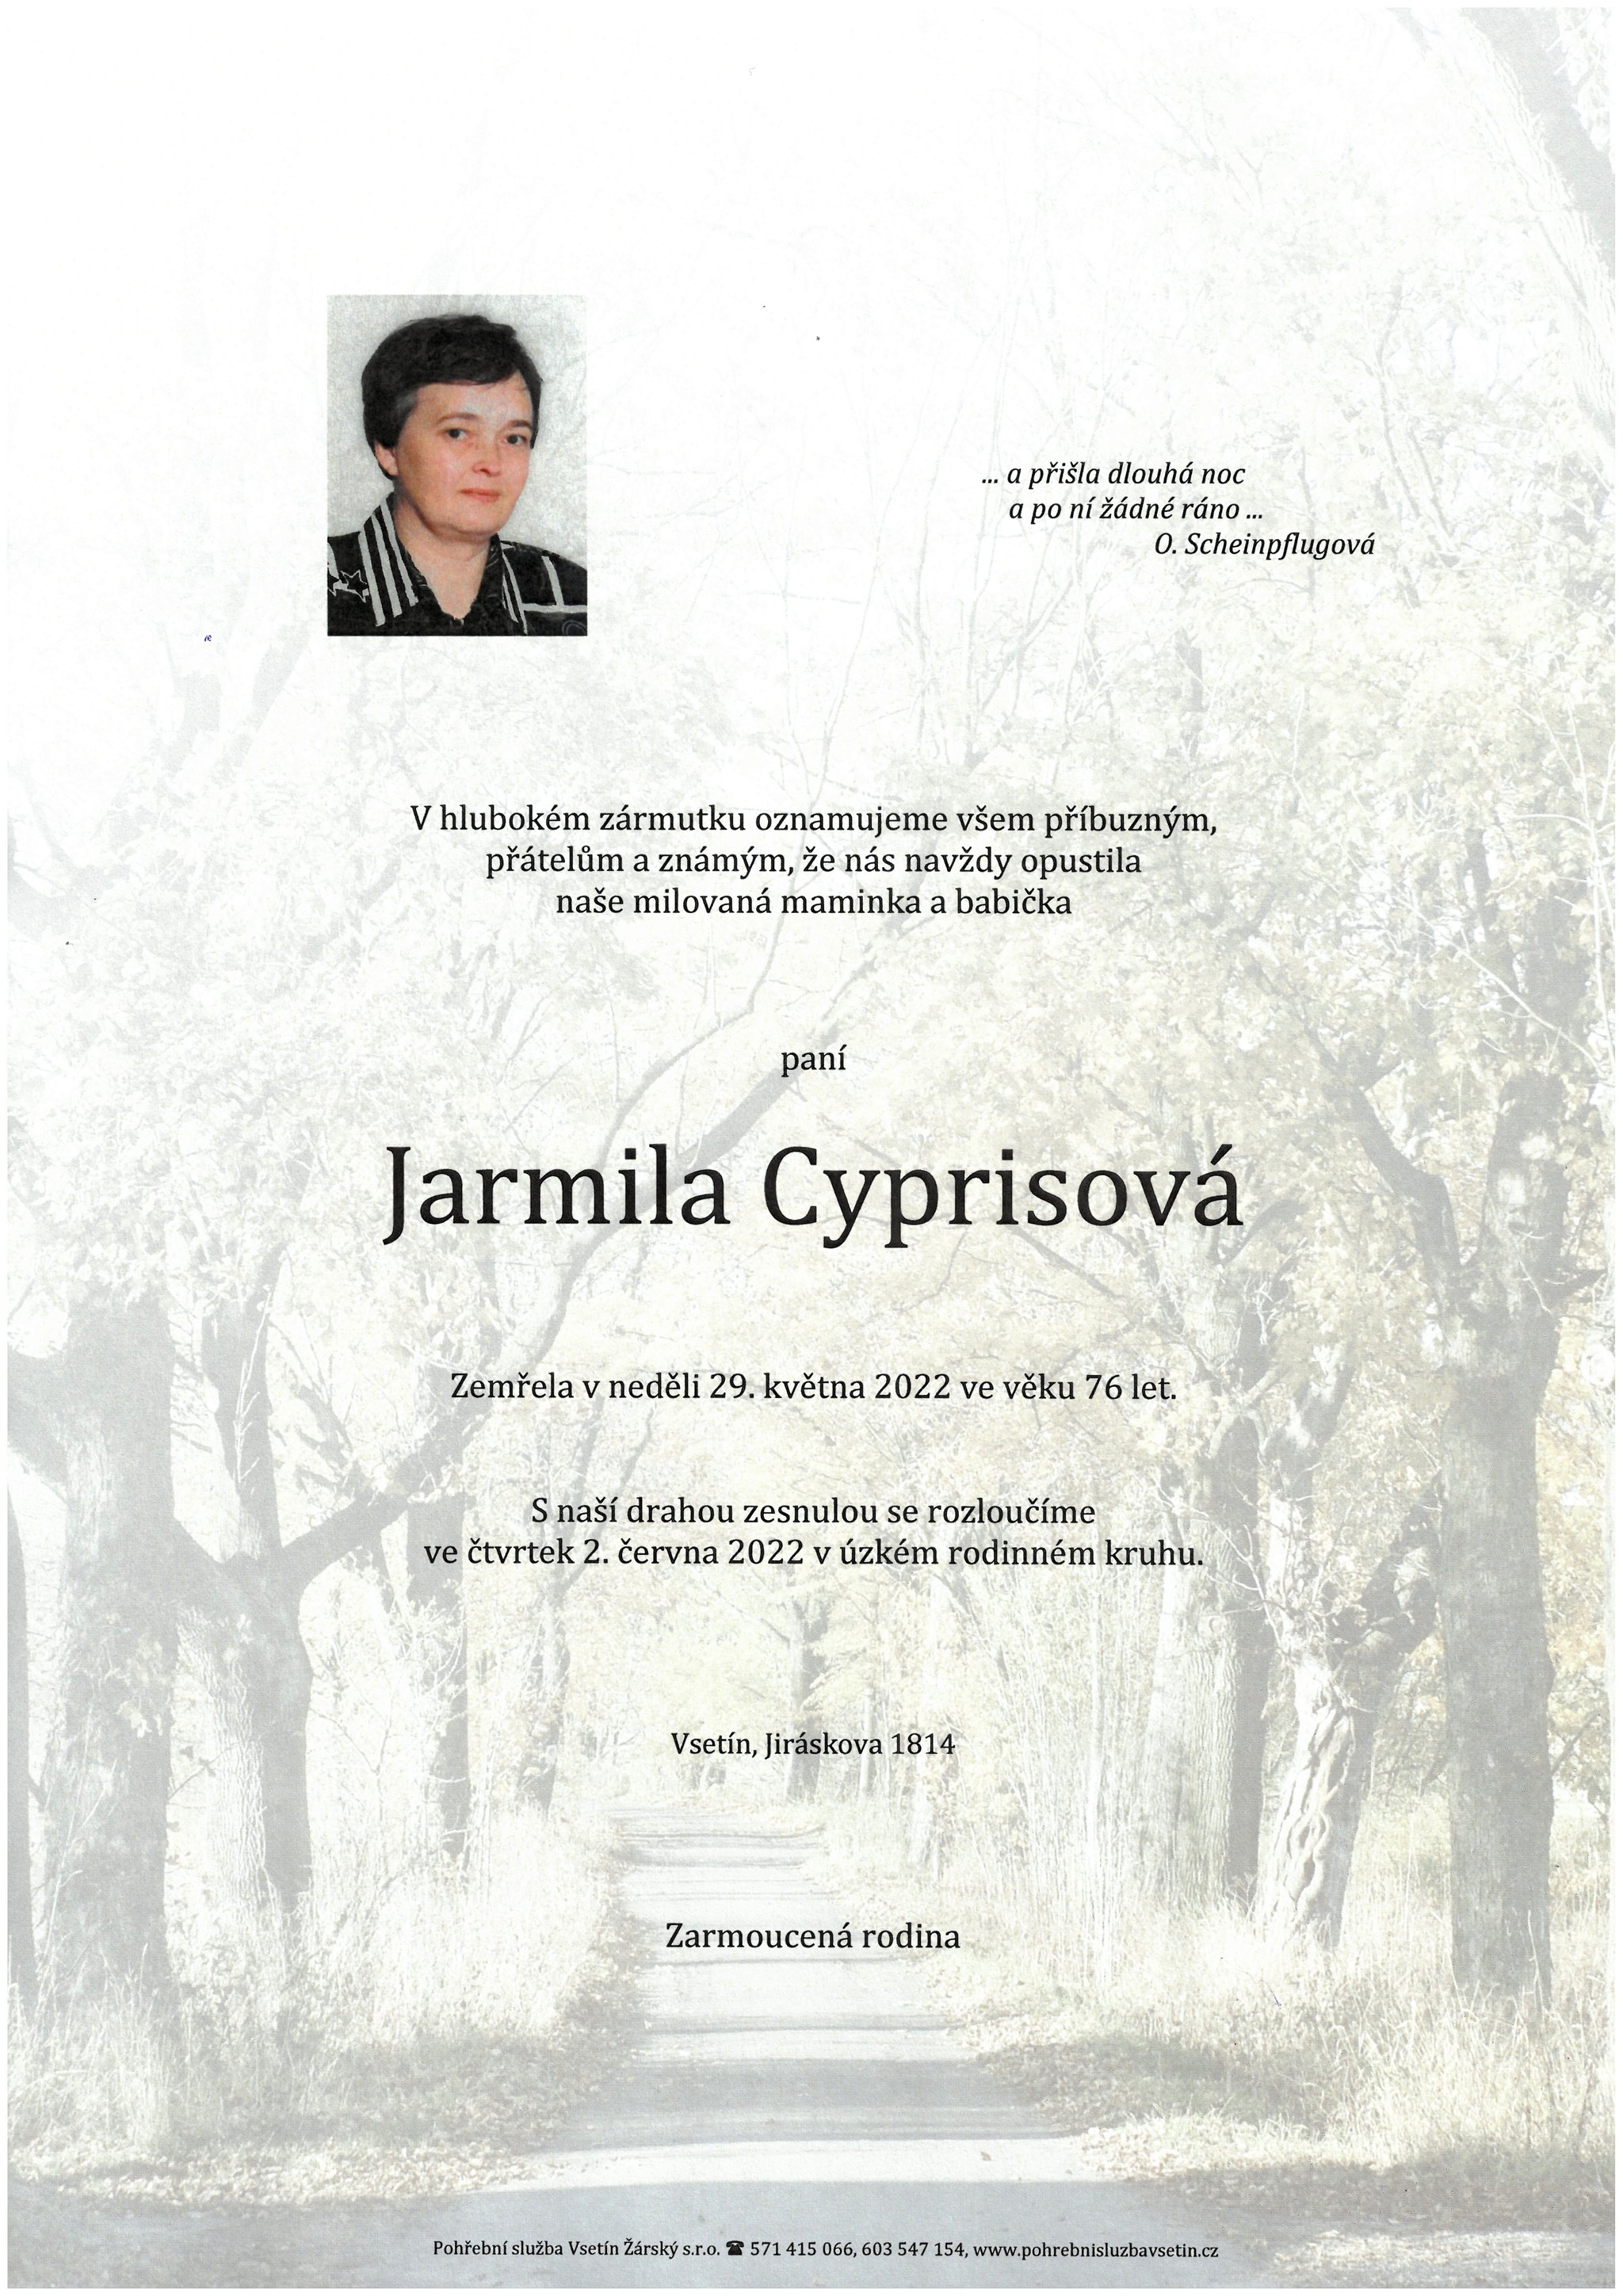 Jarmila Cyprisová